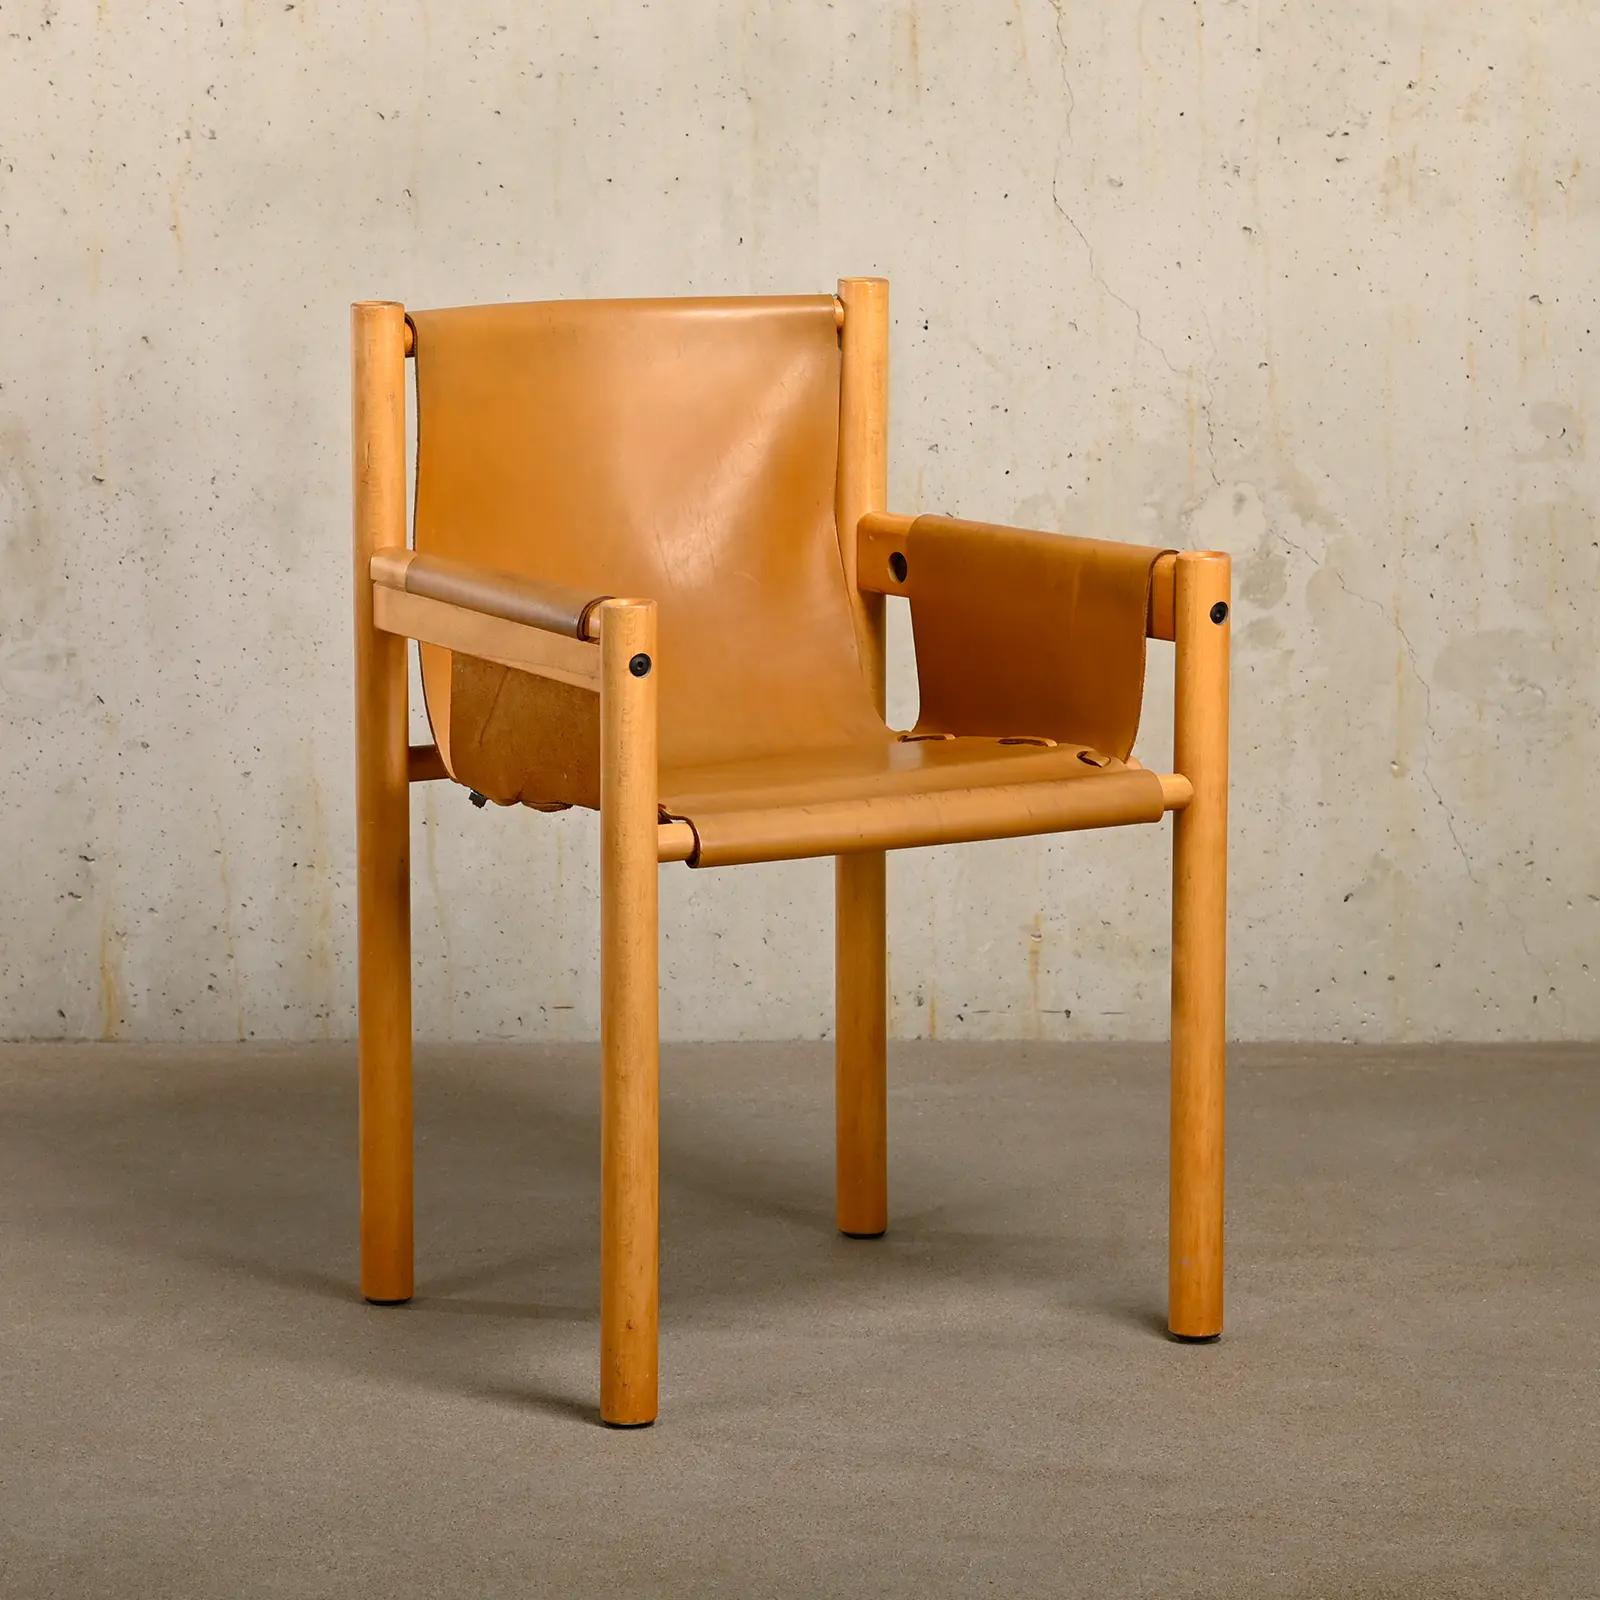 Beau fauteuil de Beeche avec structure en bois de hêtre et cuir de selle cognac. La chaise est en bon état vintage et robuste avec des signes normaux d'utilisation et de vieillissement. 